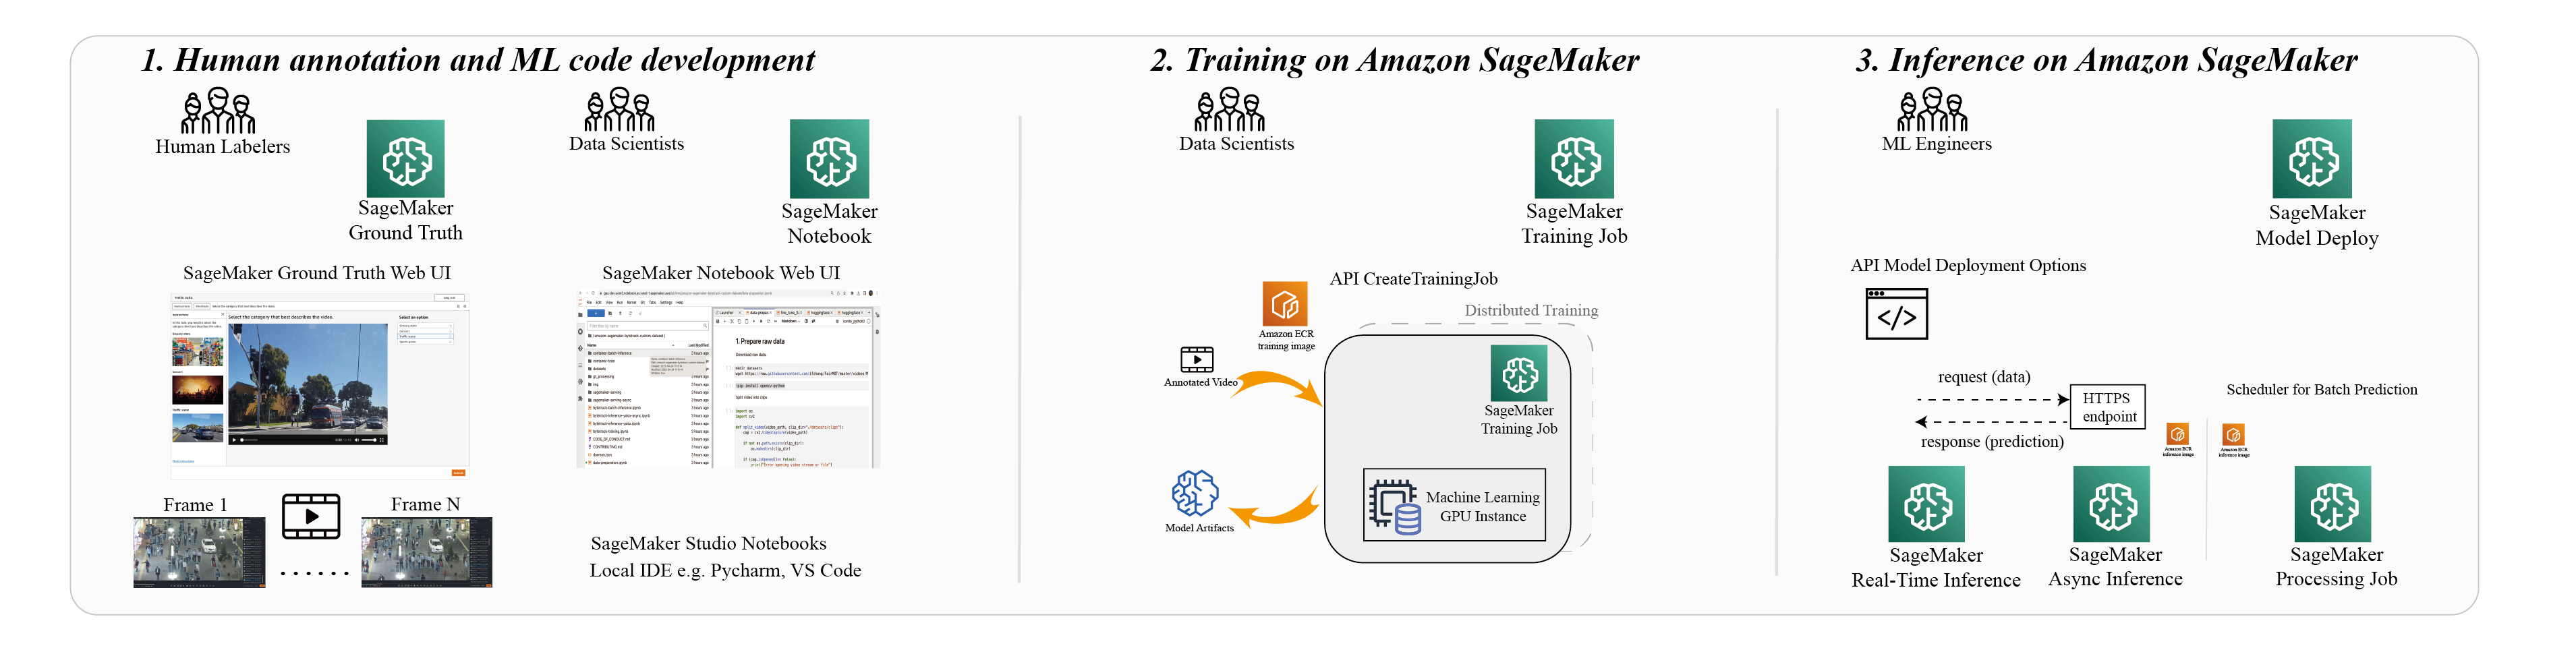 Впровадьте рішення для відстеження кількох об’єктів на спеціальному наборі даних за допомогою Amazon SageMaker | Веб-сервіси Amazon